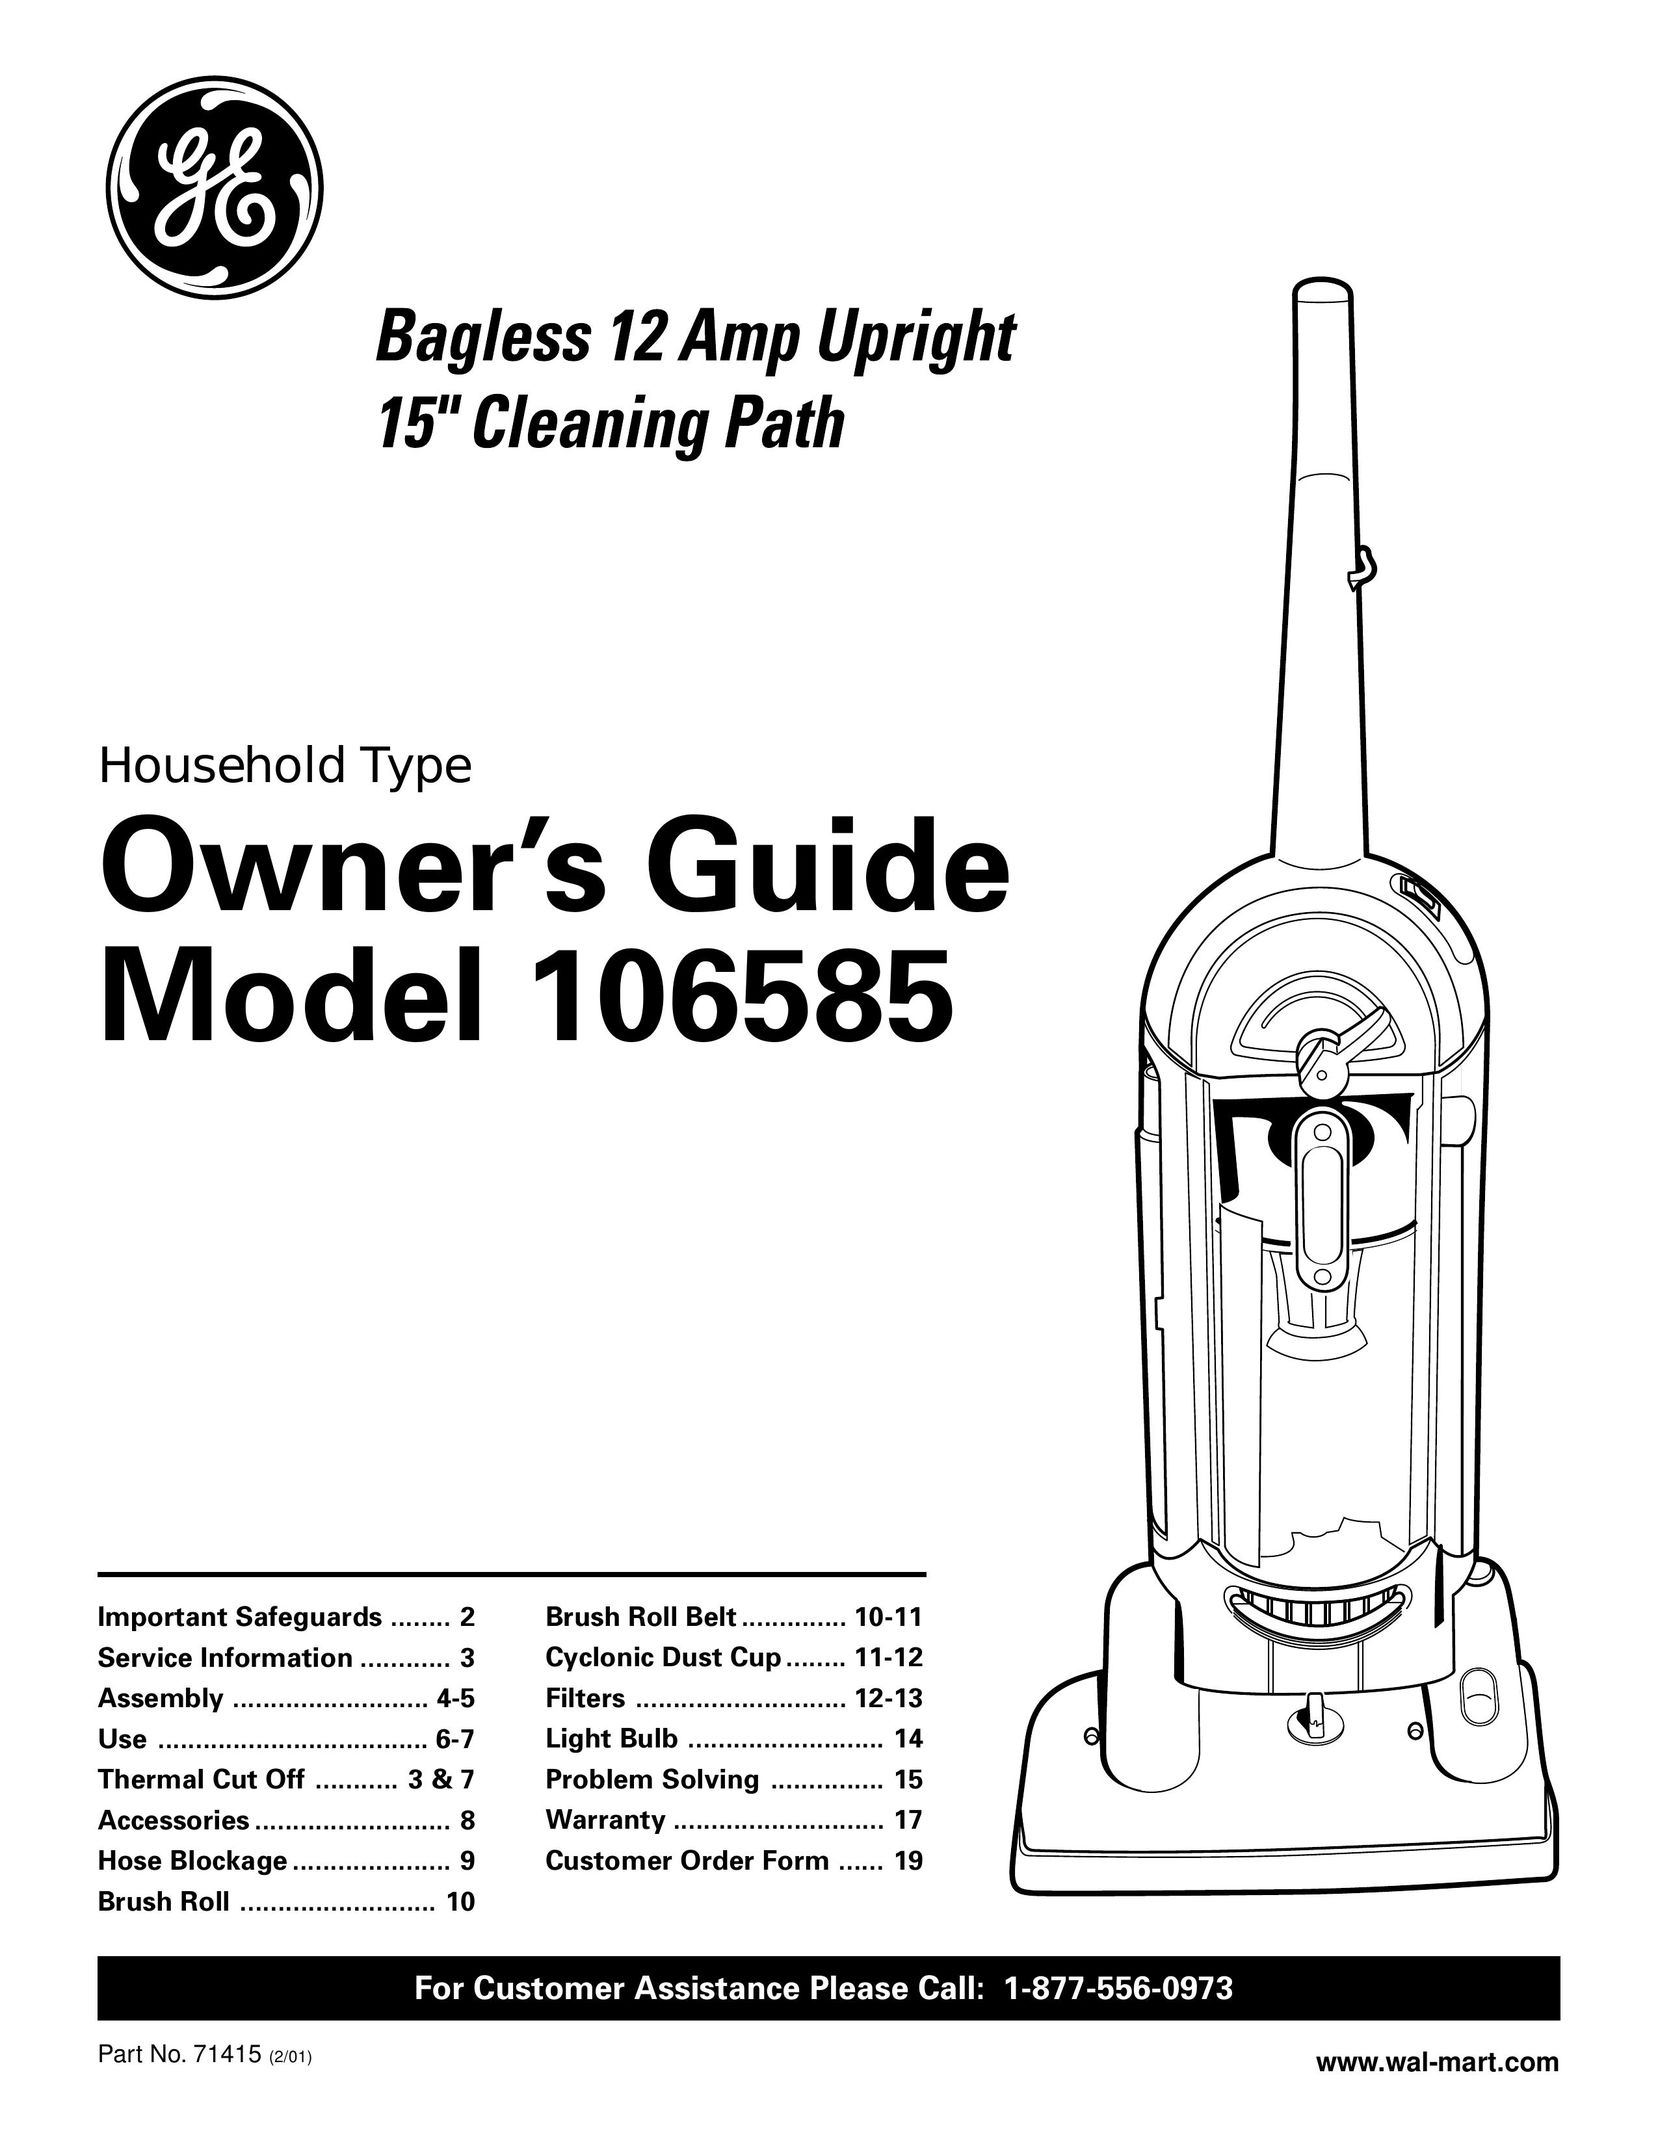 GE 106585 Vacuum Cleaner User Manual